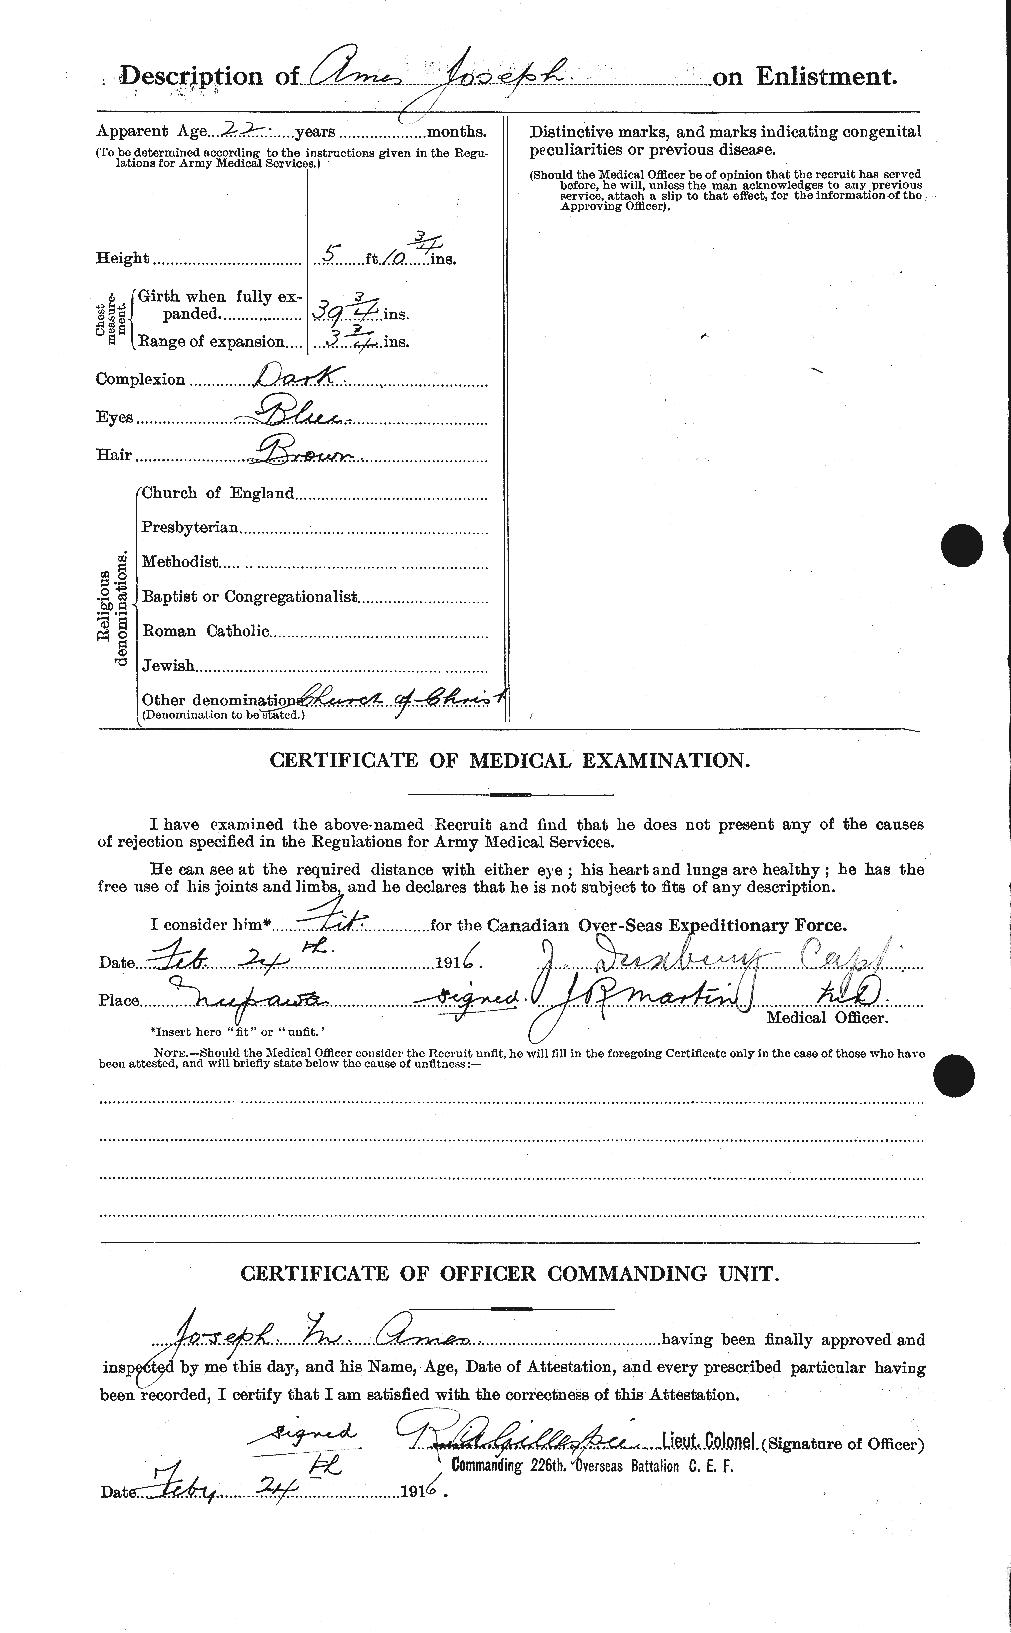 Dossiers du Personnel de la Première Guerre mondiale - CEC 208831b